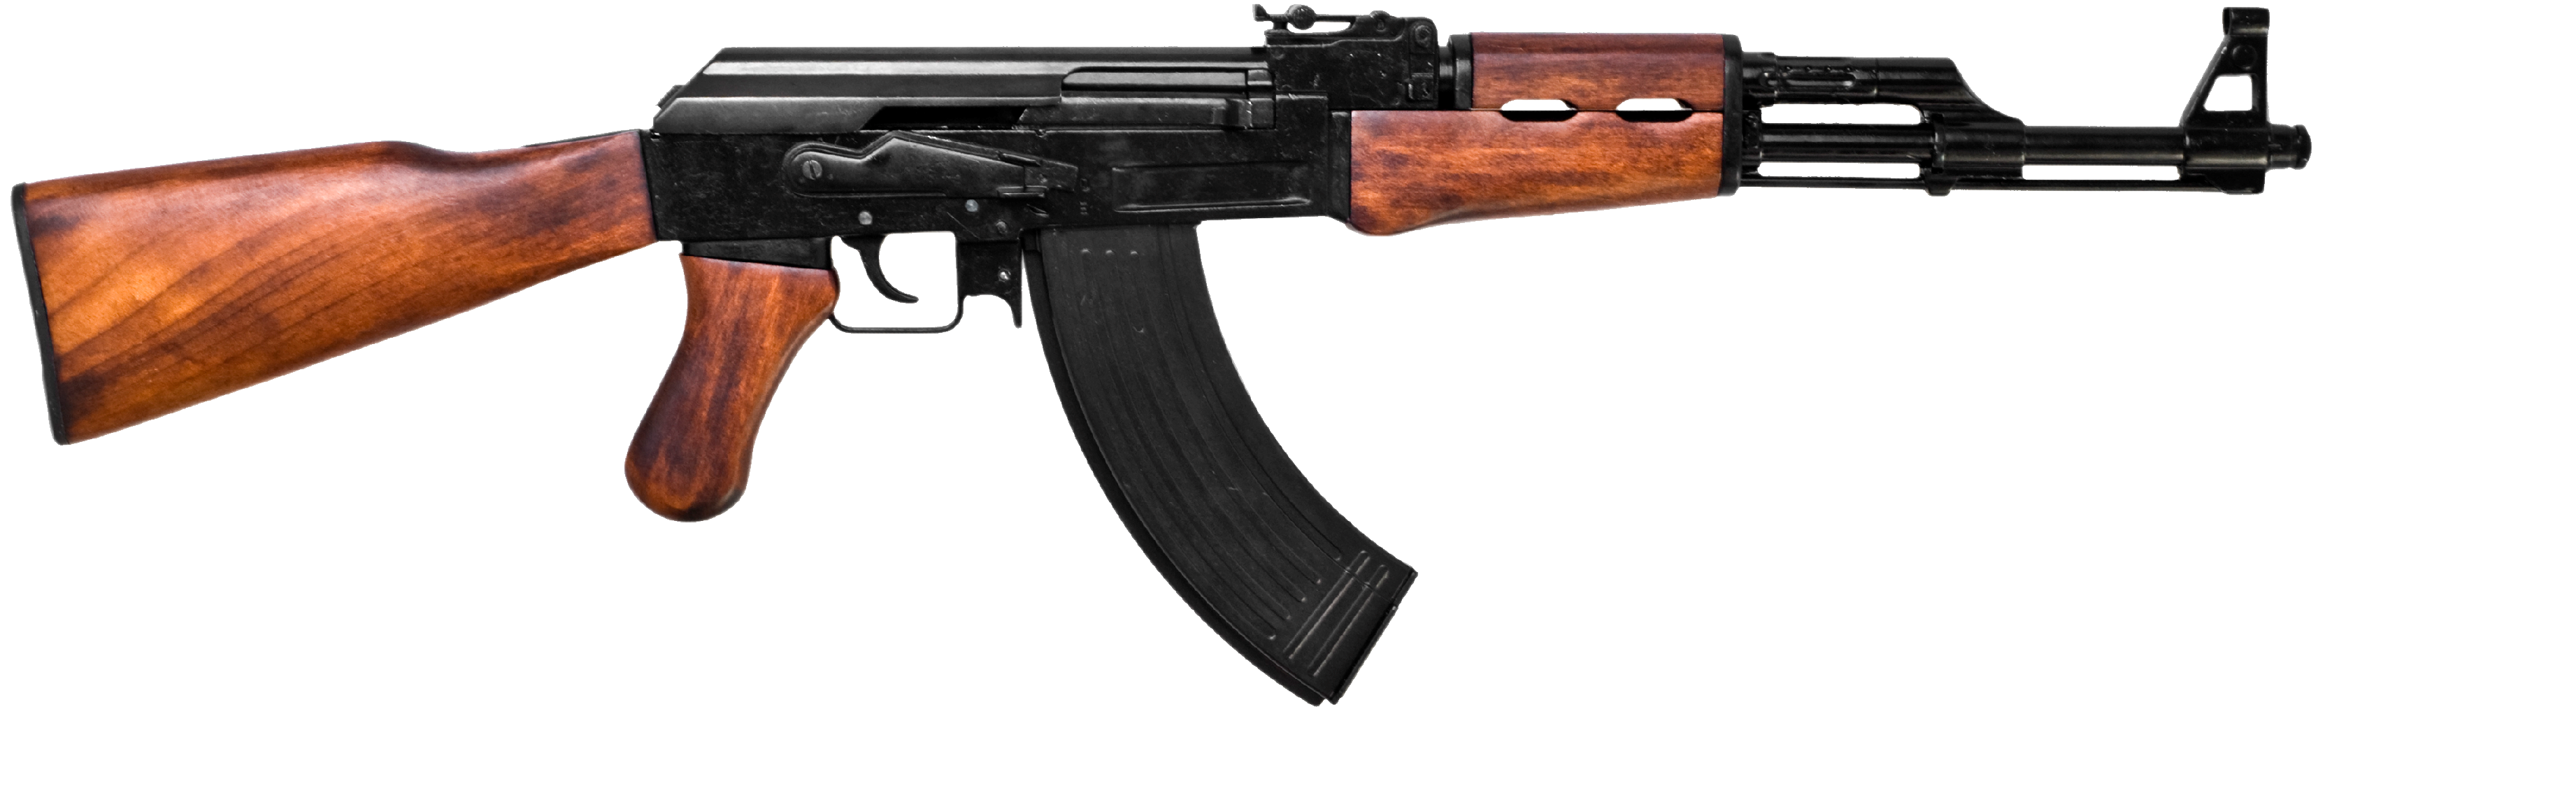 AK-47、カラッシュ、ロシアのアサルトライフル